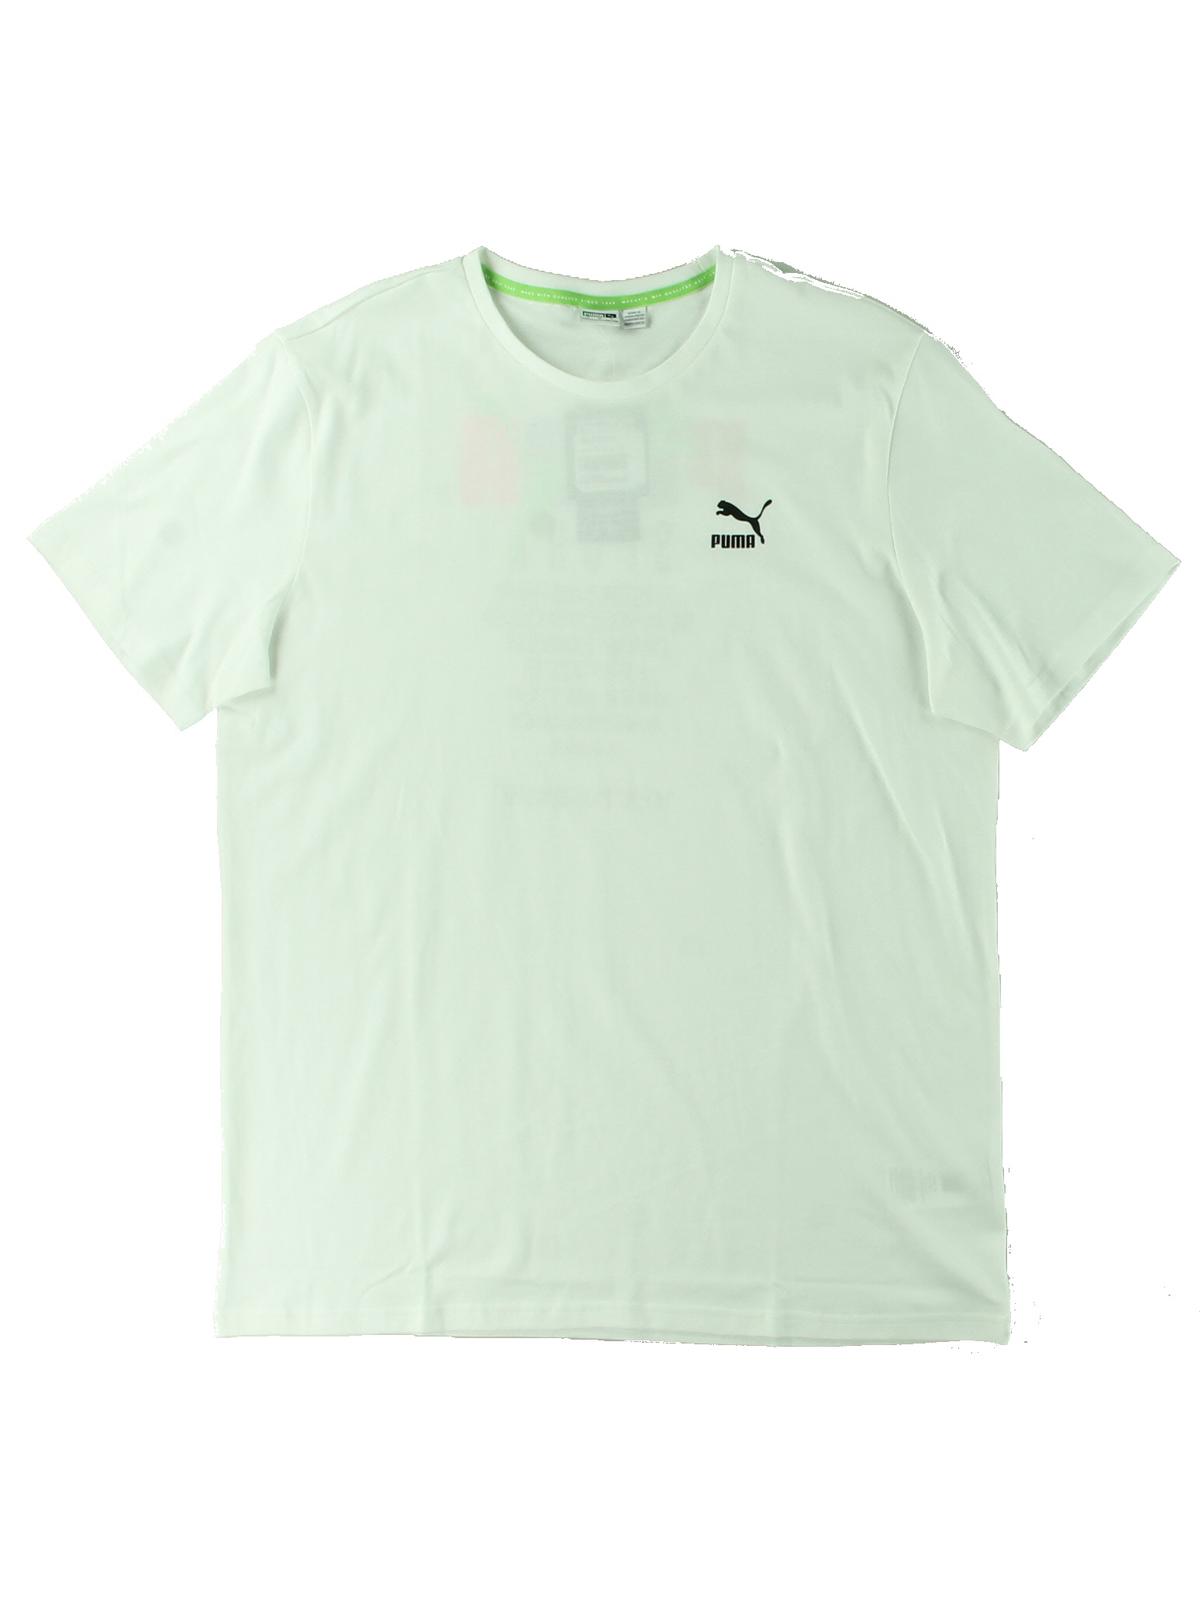 Puma Mens Running Fitness T-Shirt White S - image 1 of 2